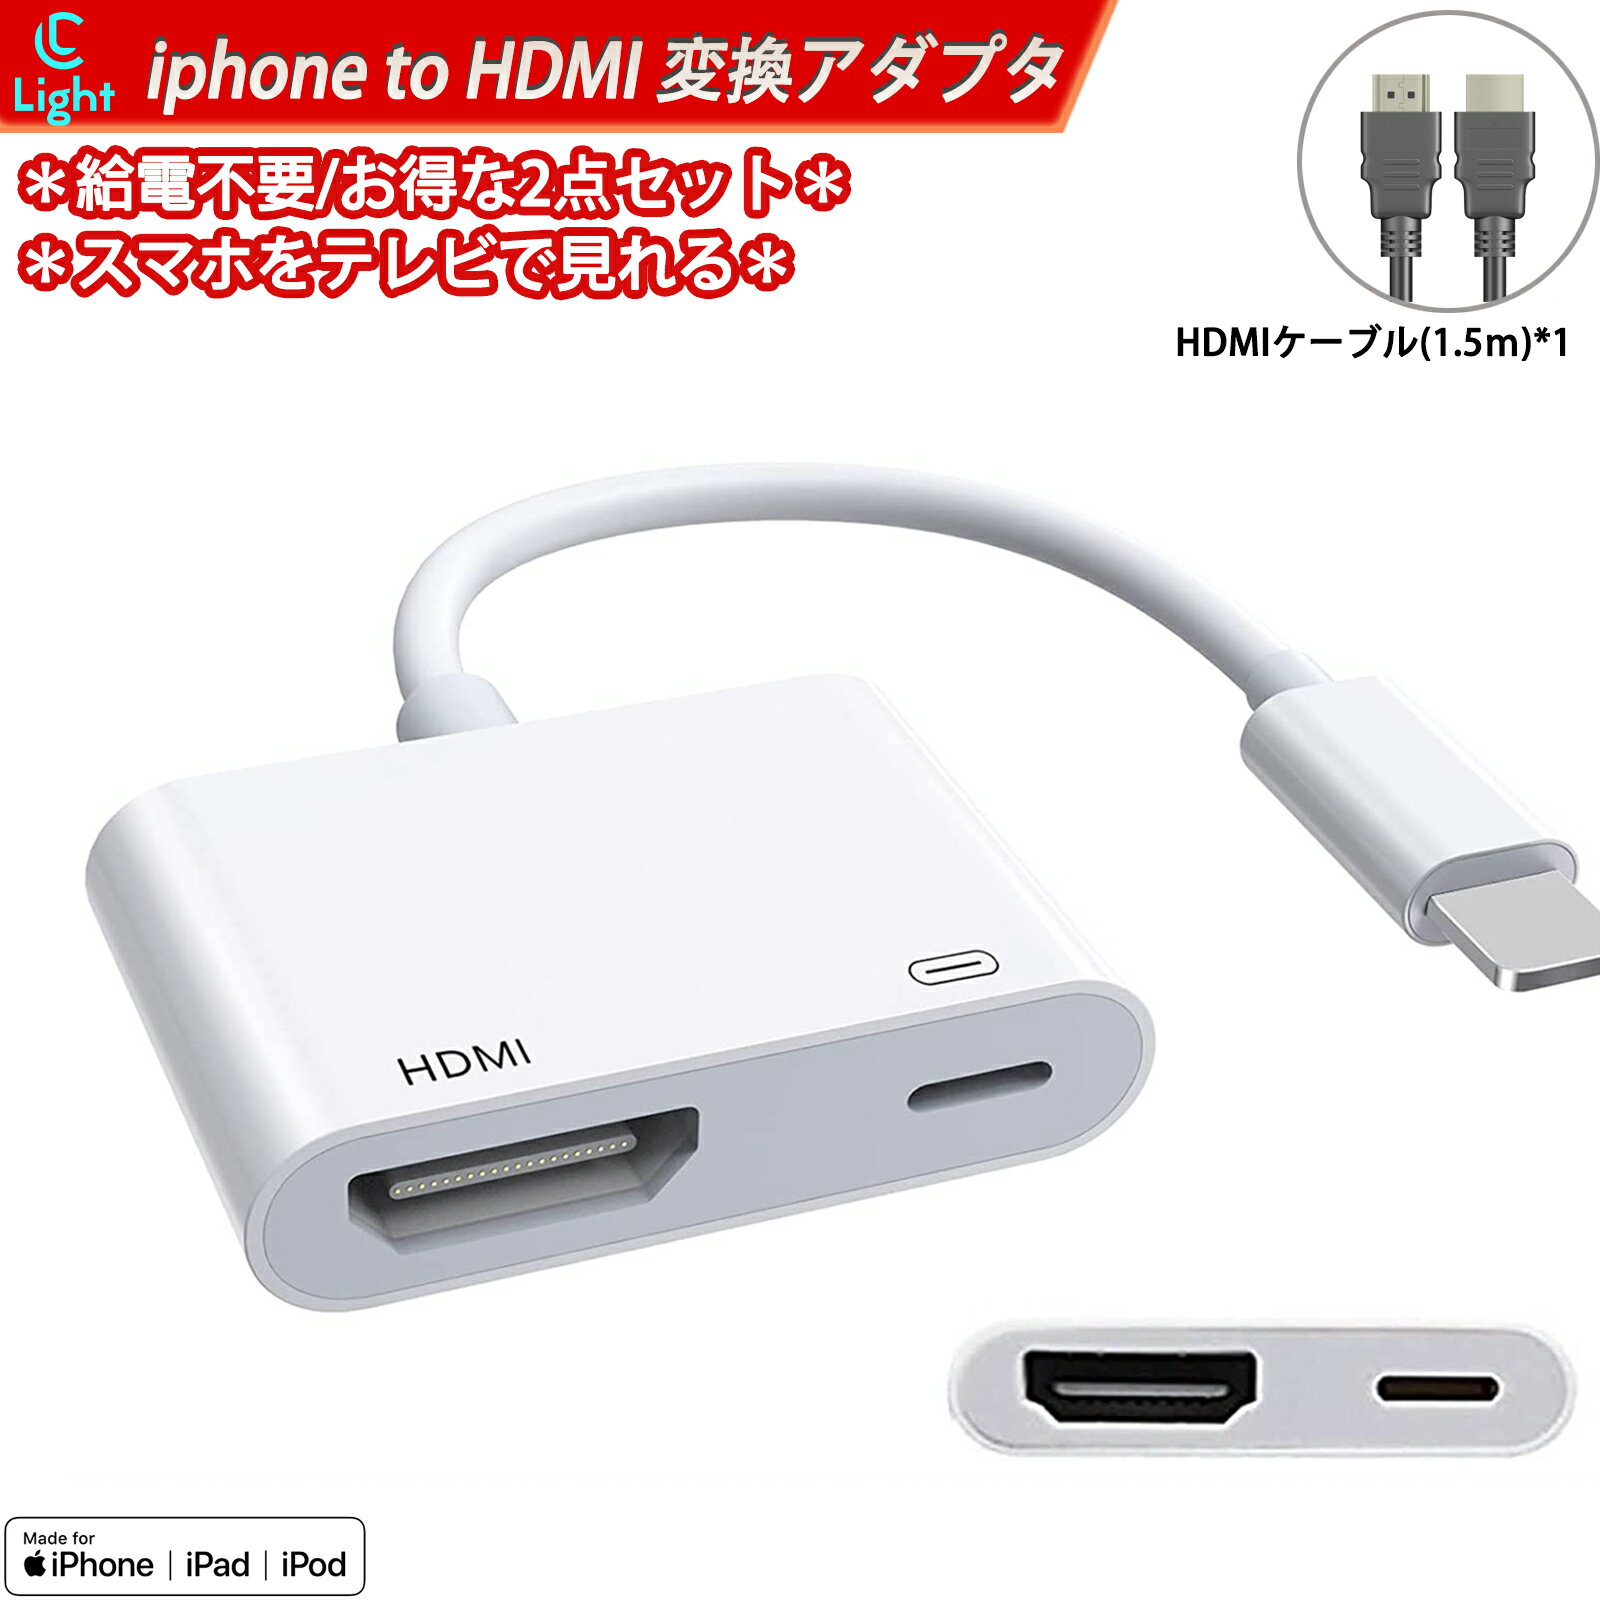 2点 iphone hdmi 変換ケーブル 1.5m HDMIケーブル付き 純正品質 設定不要 lightning HDMI アダプタ 1080PフルHD 高性能チップを採用 給電不要 ライトニング hdmi avアダプタ 音声同期出力 ゲーム遅延なし av/ TV視聴 iOS最新対応